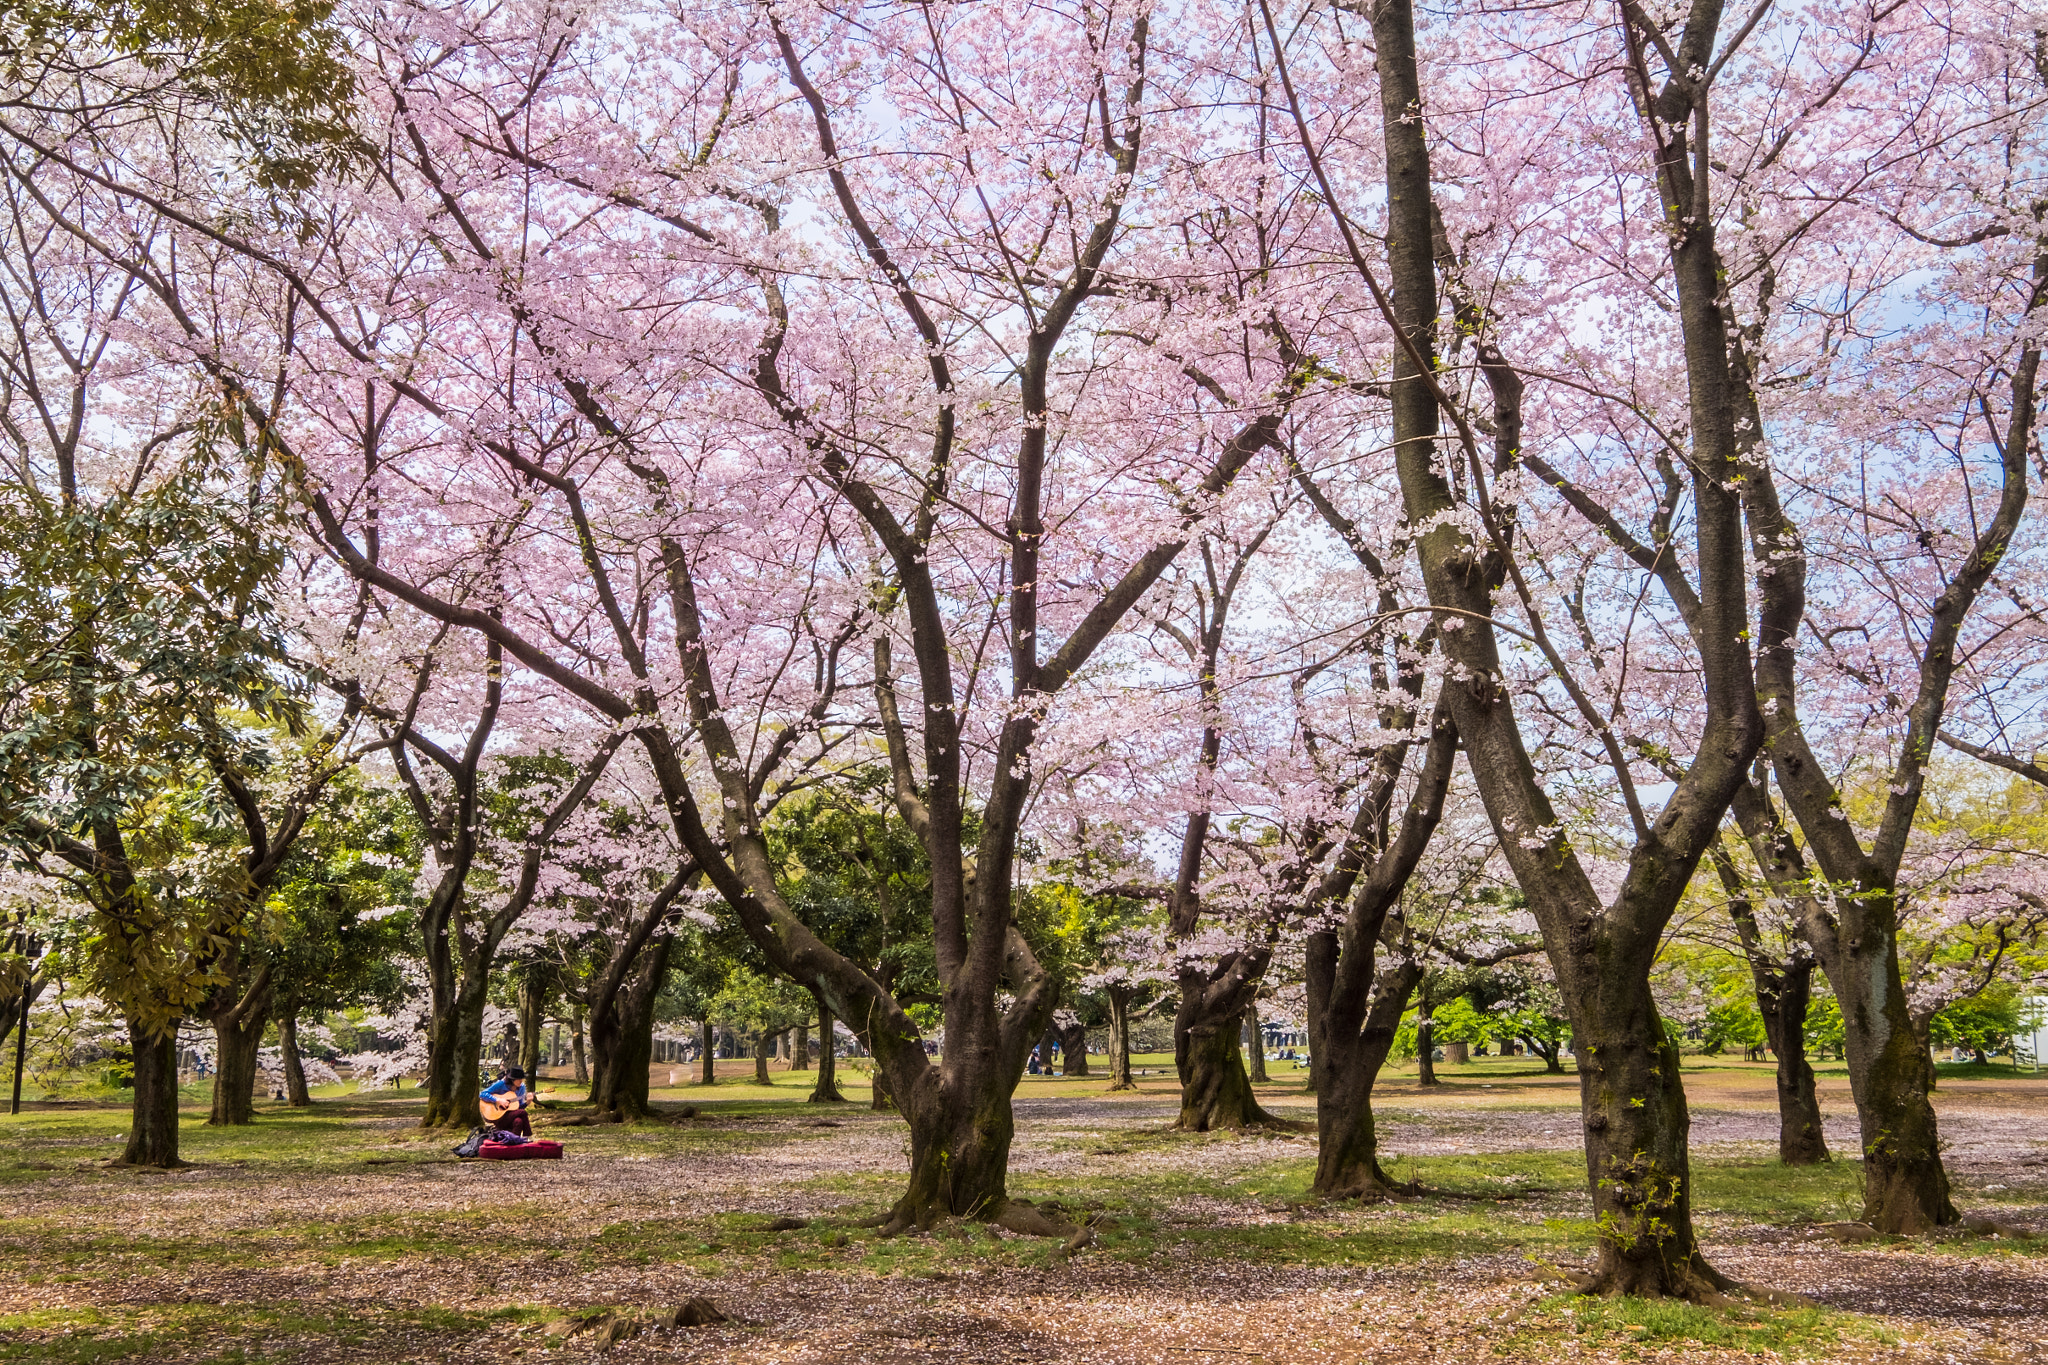 Fujifilm X-E2S + Fujifilm XF 10-24mm F4 R OIS sample photo. Serenade under cherry blossoms photography